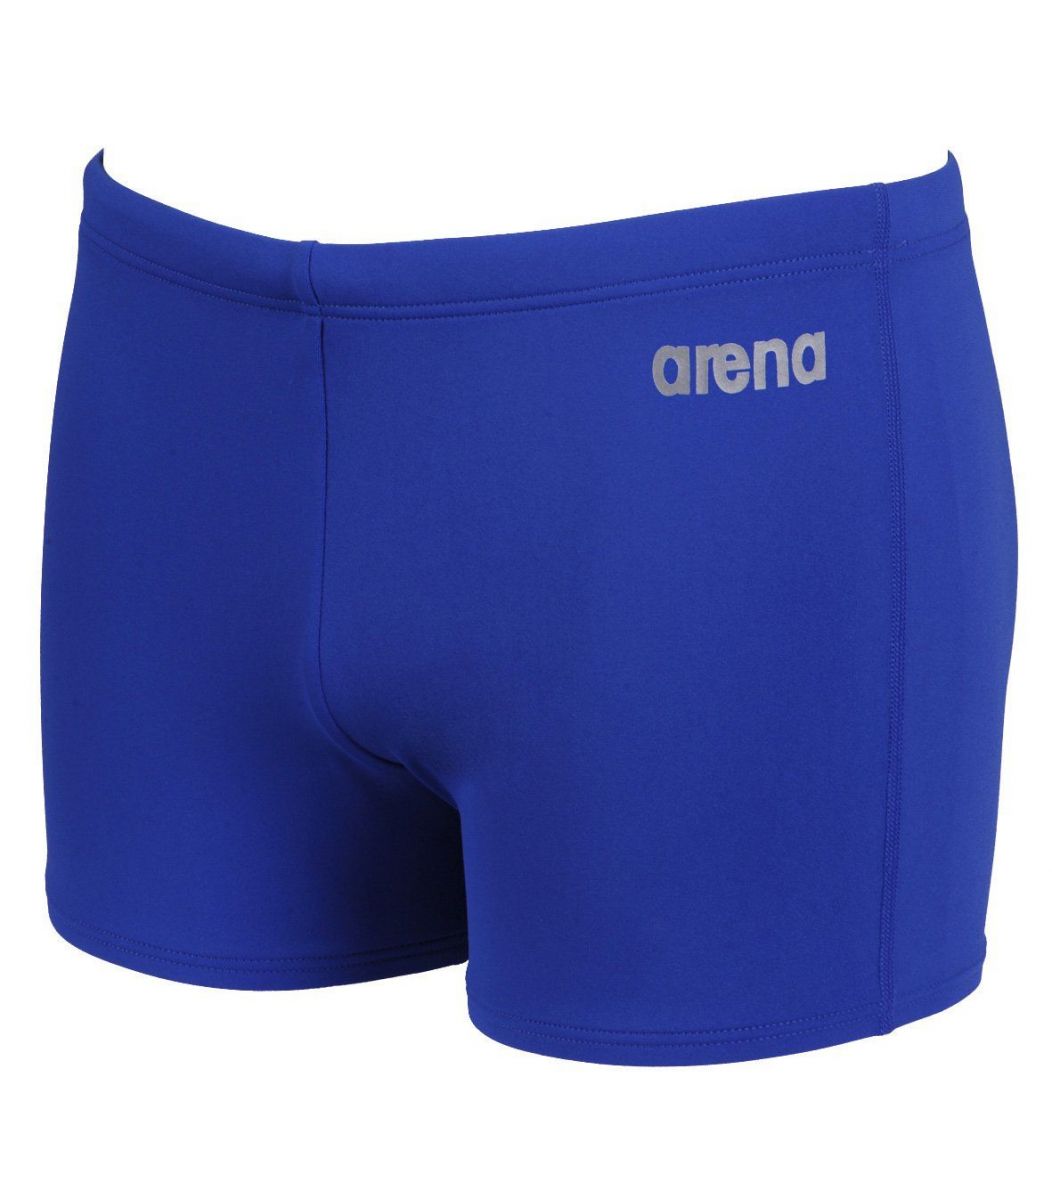  Μαγιό Arena Arena Boy Swimwear Bynars Youth 2109972-1